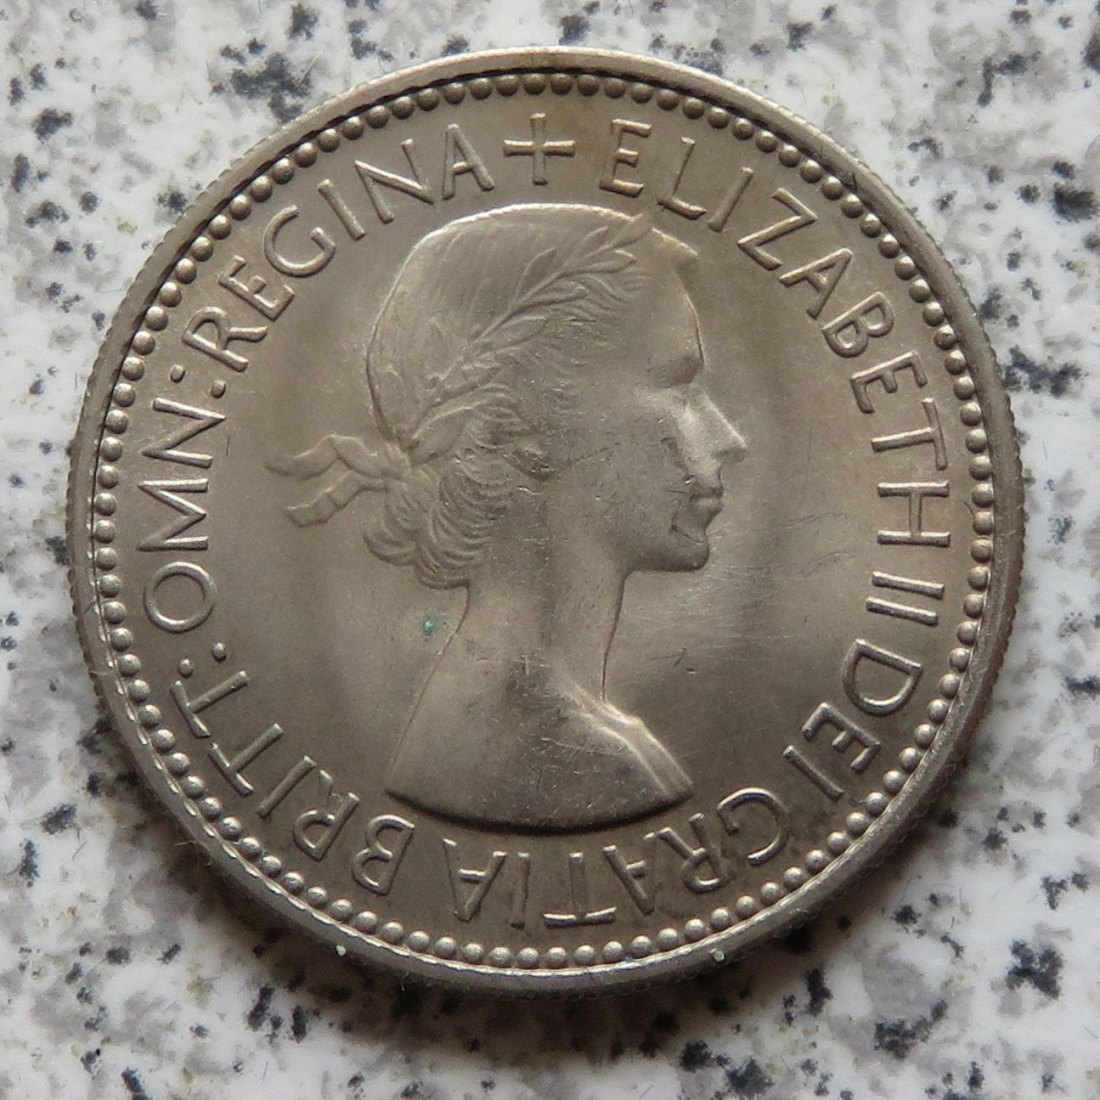  Großbritannien 1 Shilling 1953, Schottisch, Erhaltung (3)   